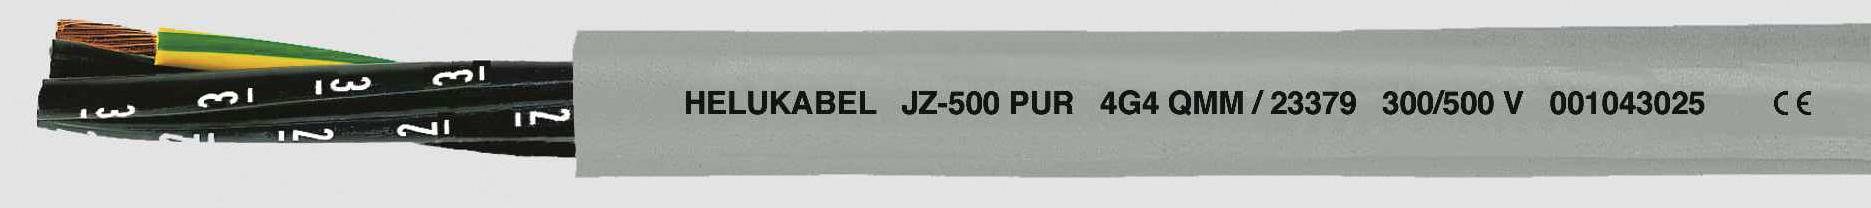 HELUKABEL JZ-500 PUR Steuerleitung 7 G 0.50 mm² Grau 23321-500 500 m